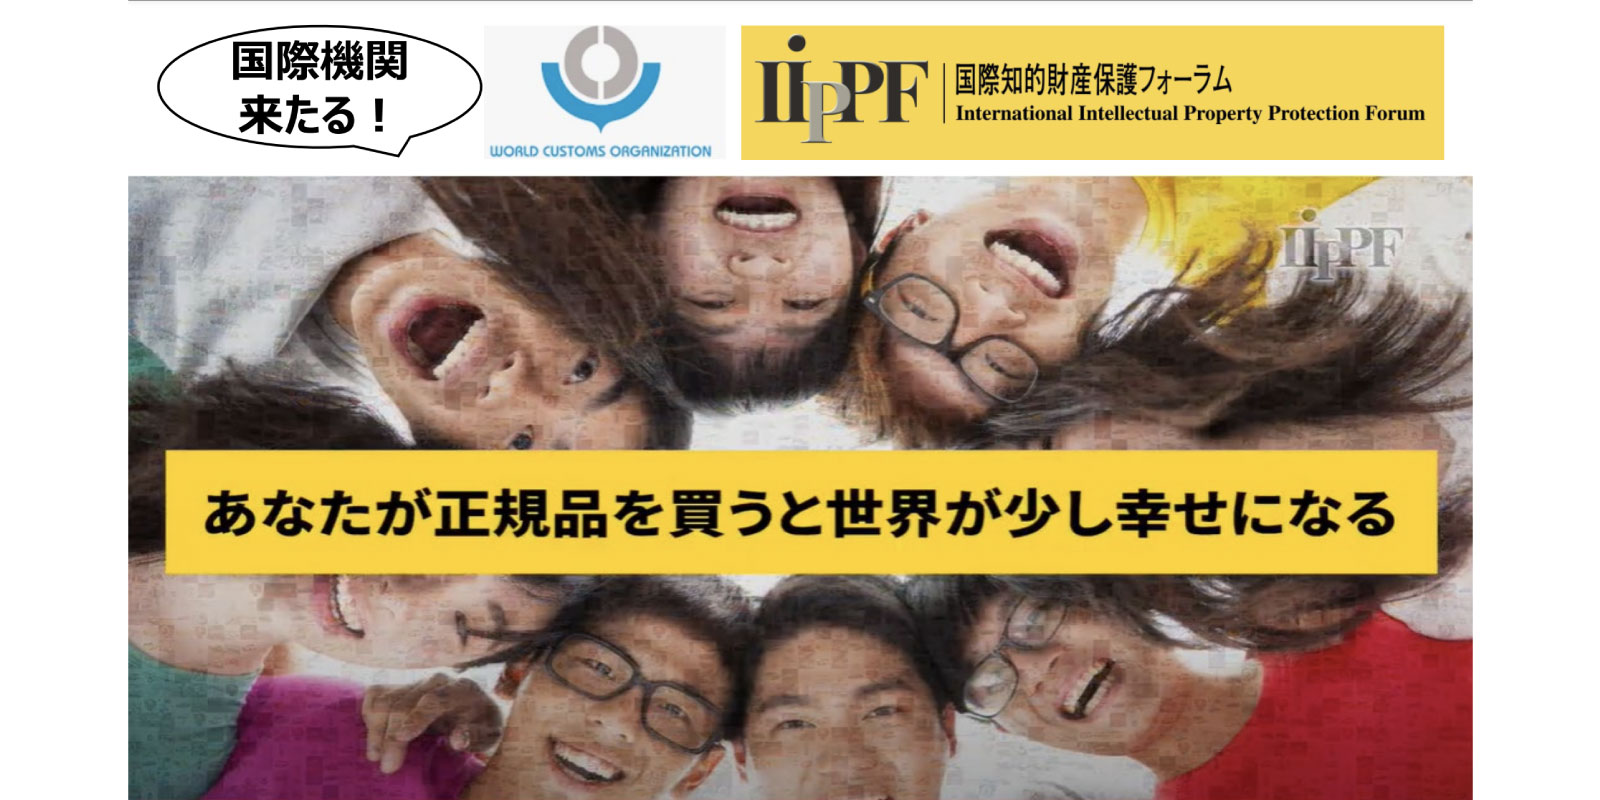 世界税関機構×IIPPF共催、“世界のニセモノ対策”のための知財啓発イベントが無料開催